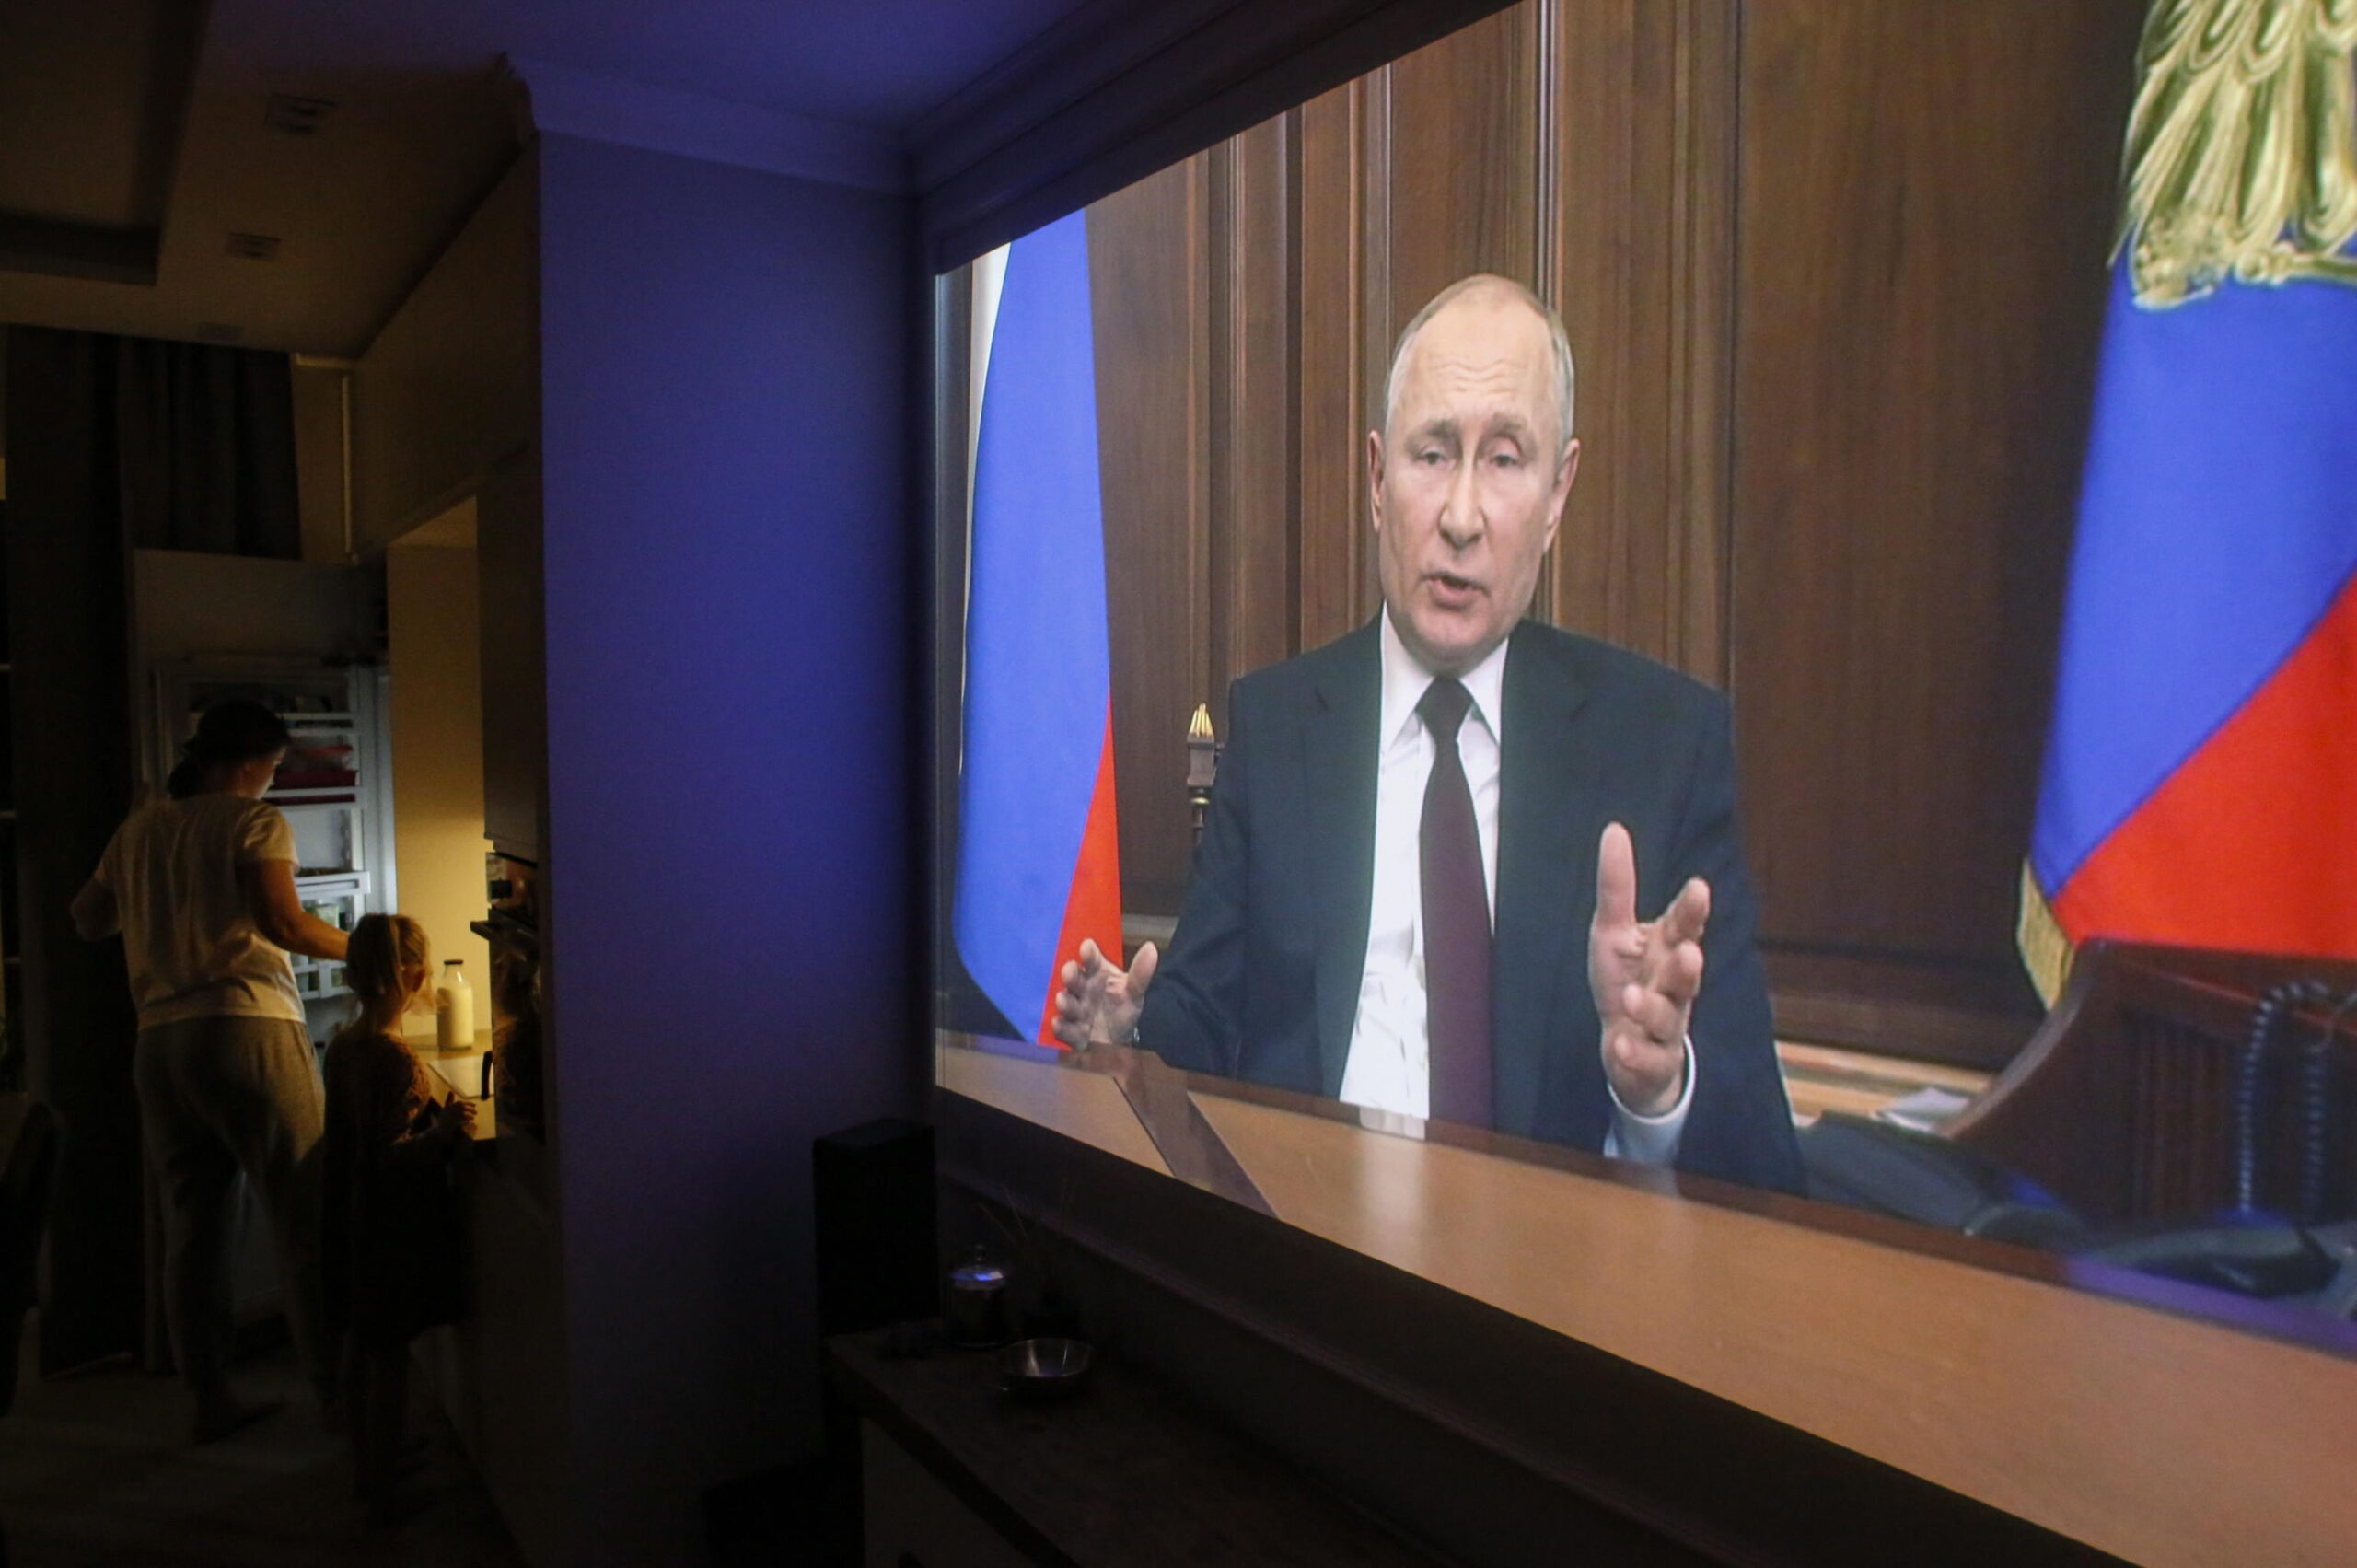 Putin all’attacco, il Donbass è russo